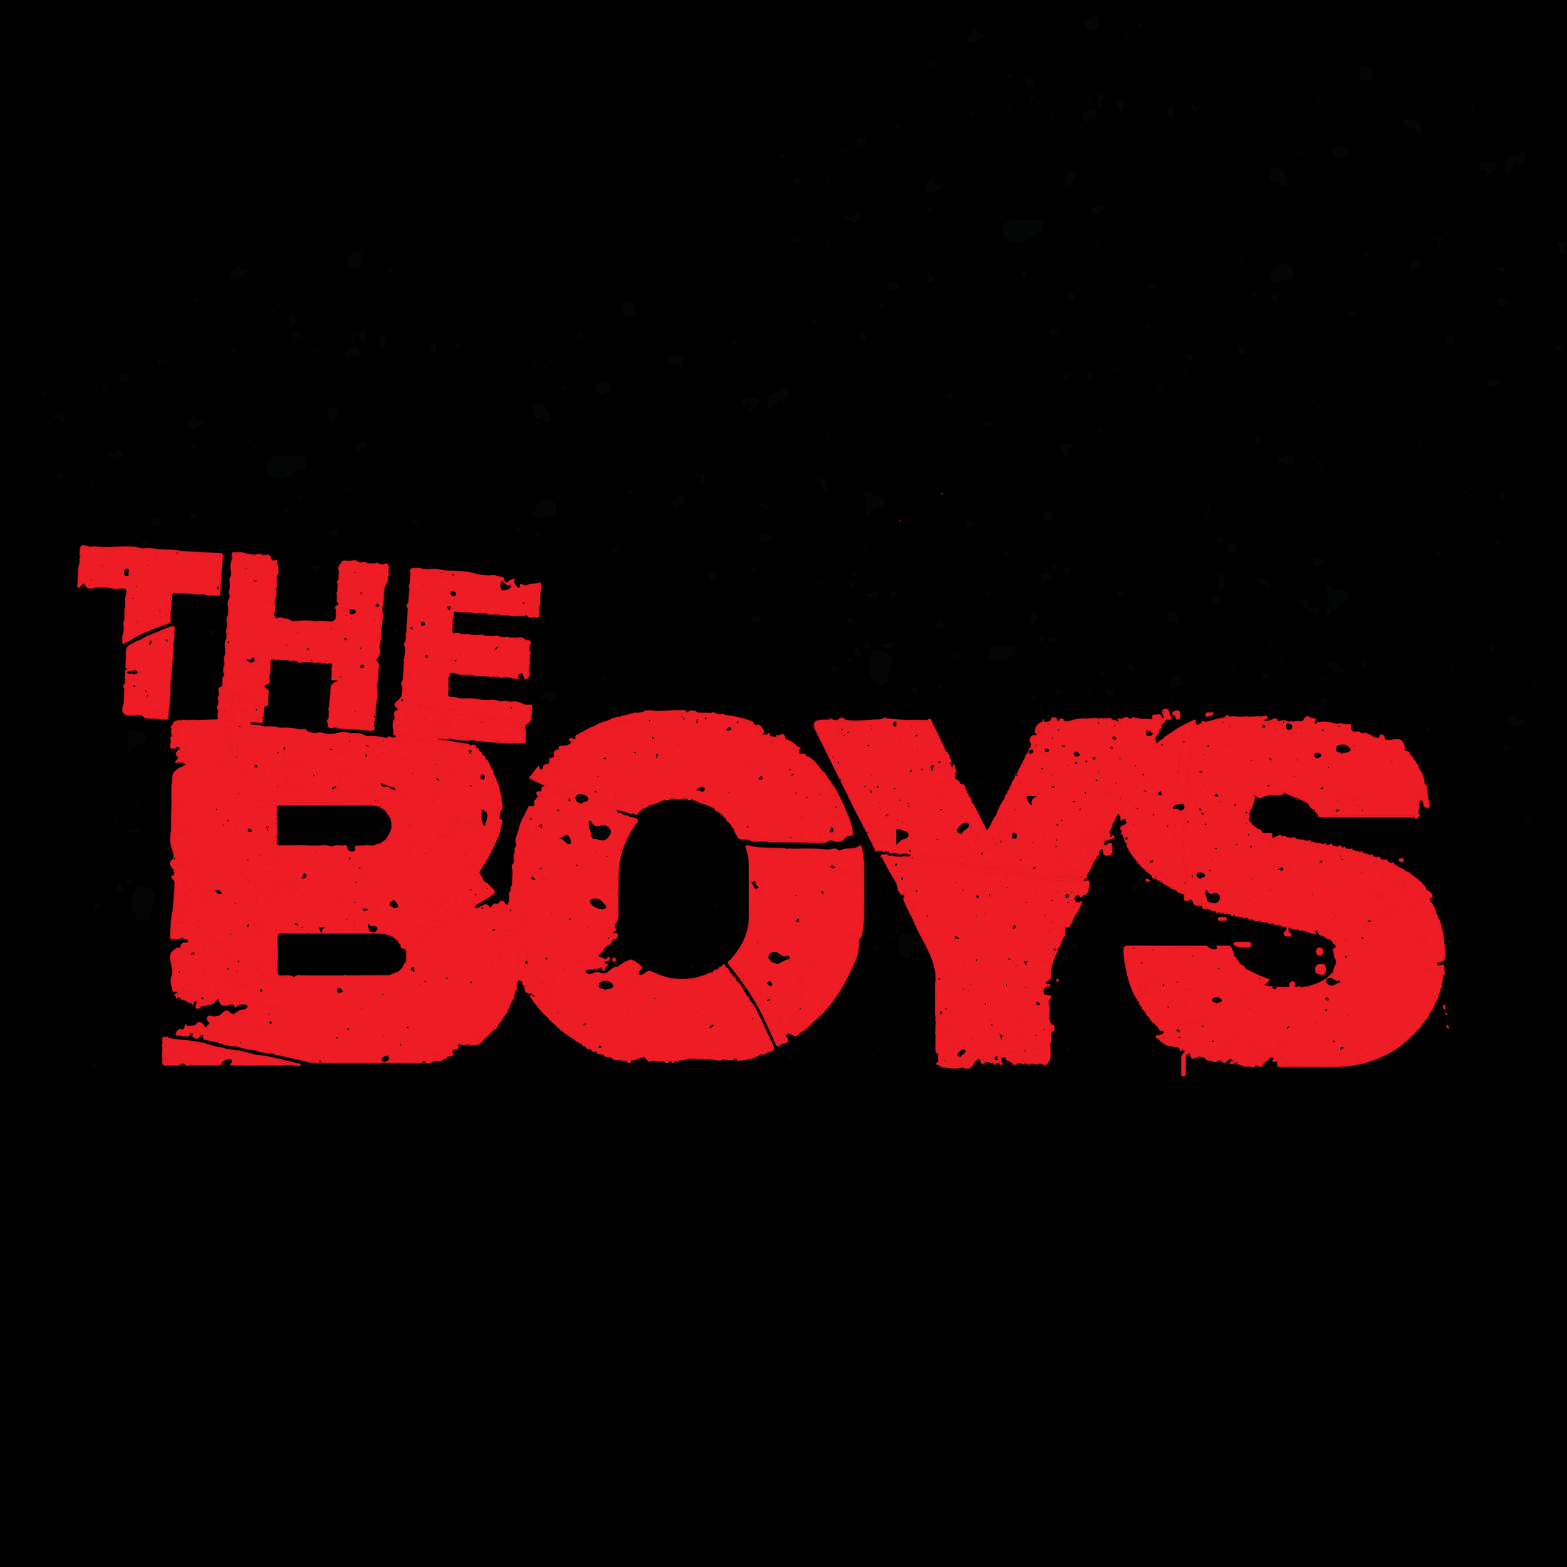 The Boys - Ken Adams